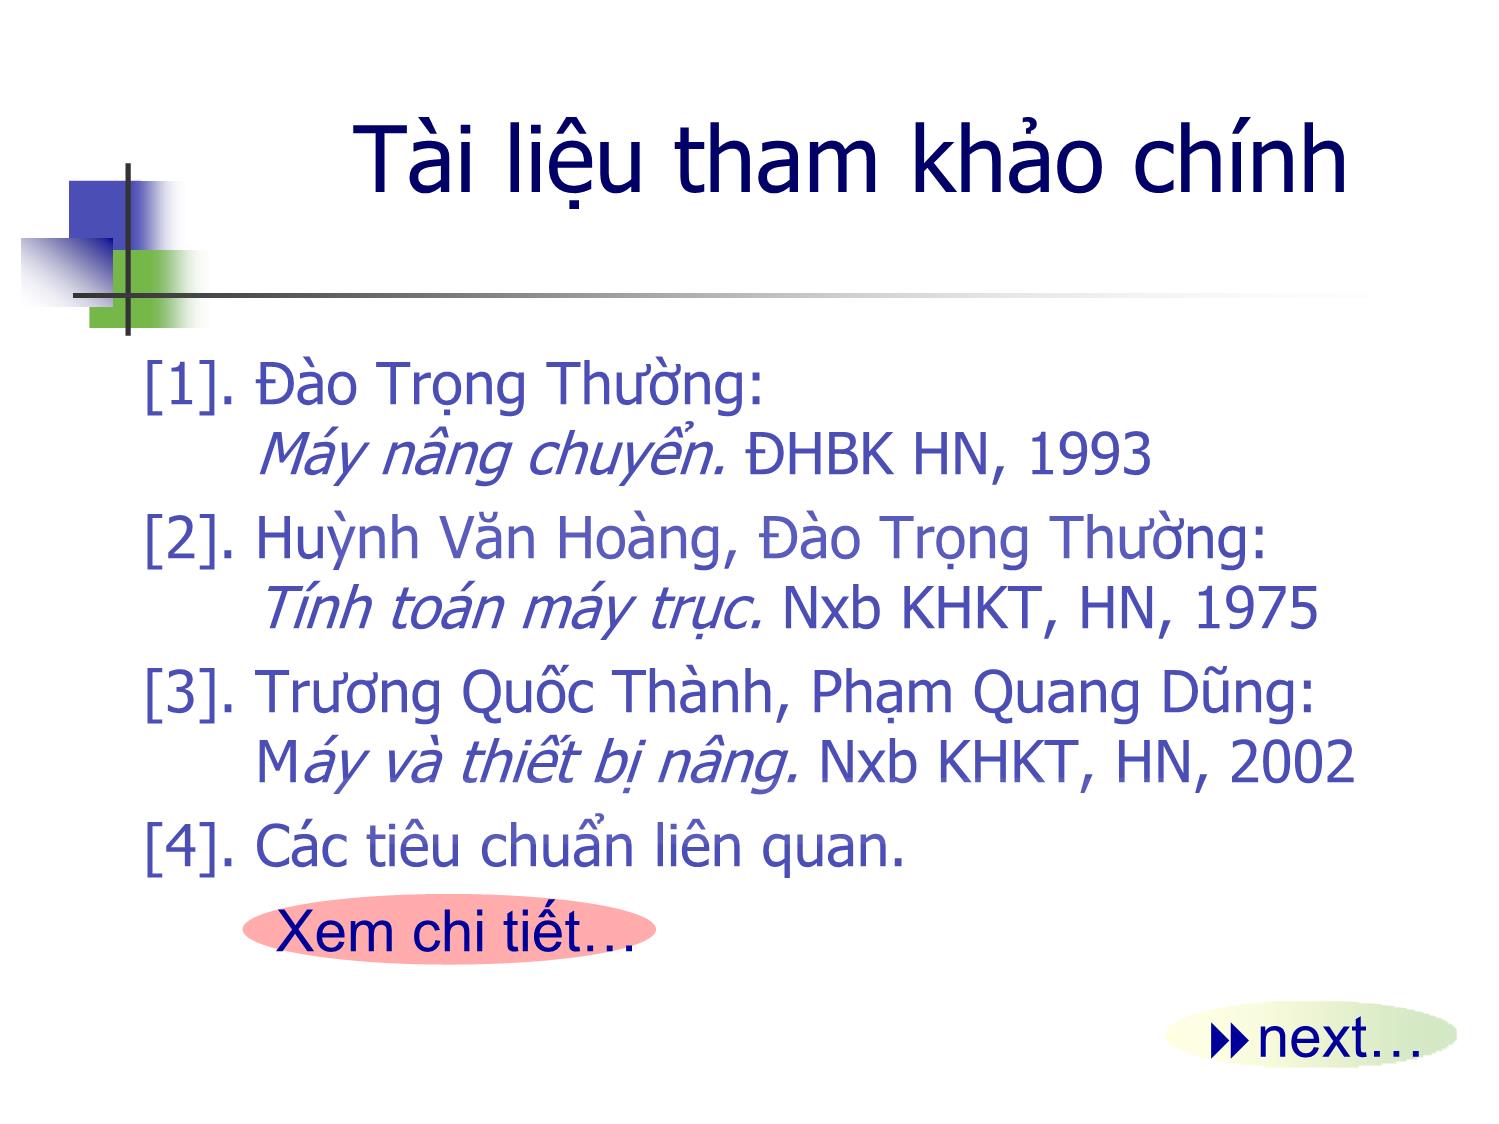 Bài giảng Máy nâng chuyển - Chương mở đầu - Trịnh Đồng Tính trang 6